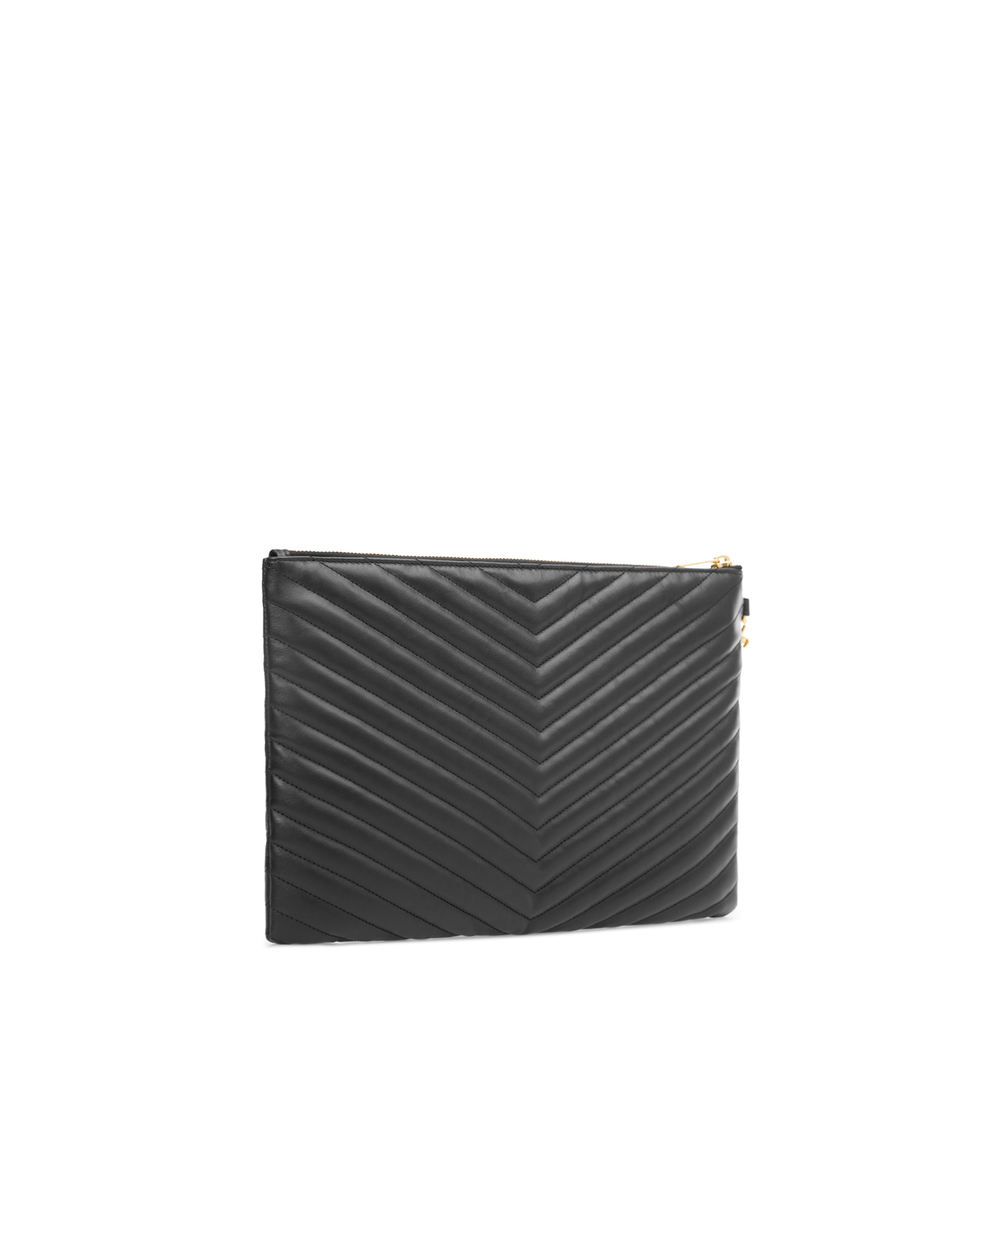 Кожаный клатч Monogram Saint Laurent 413444-CWU01, черный цвет • Купить в интернет-магазине Kameron